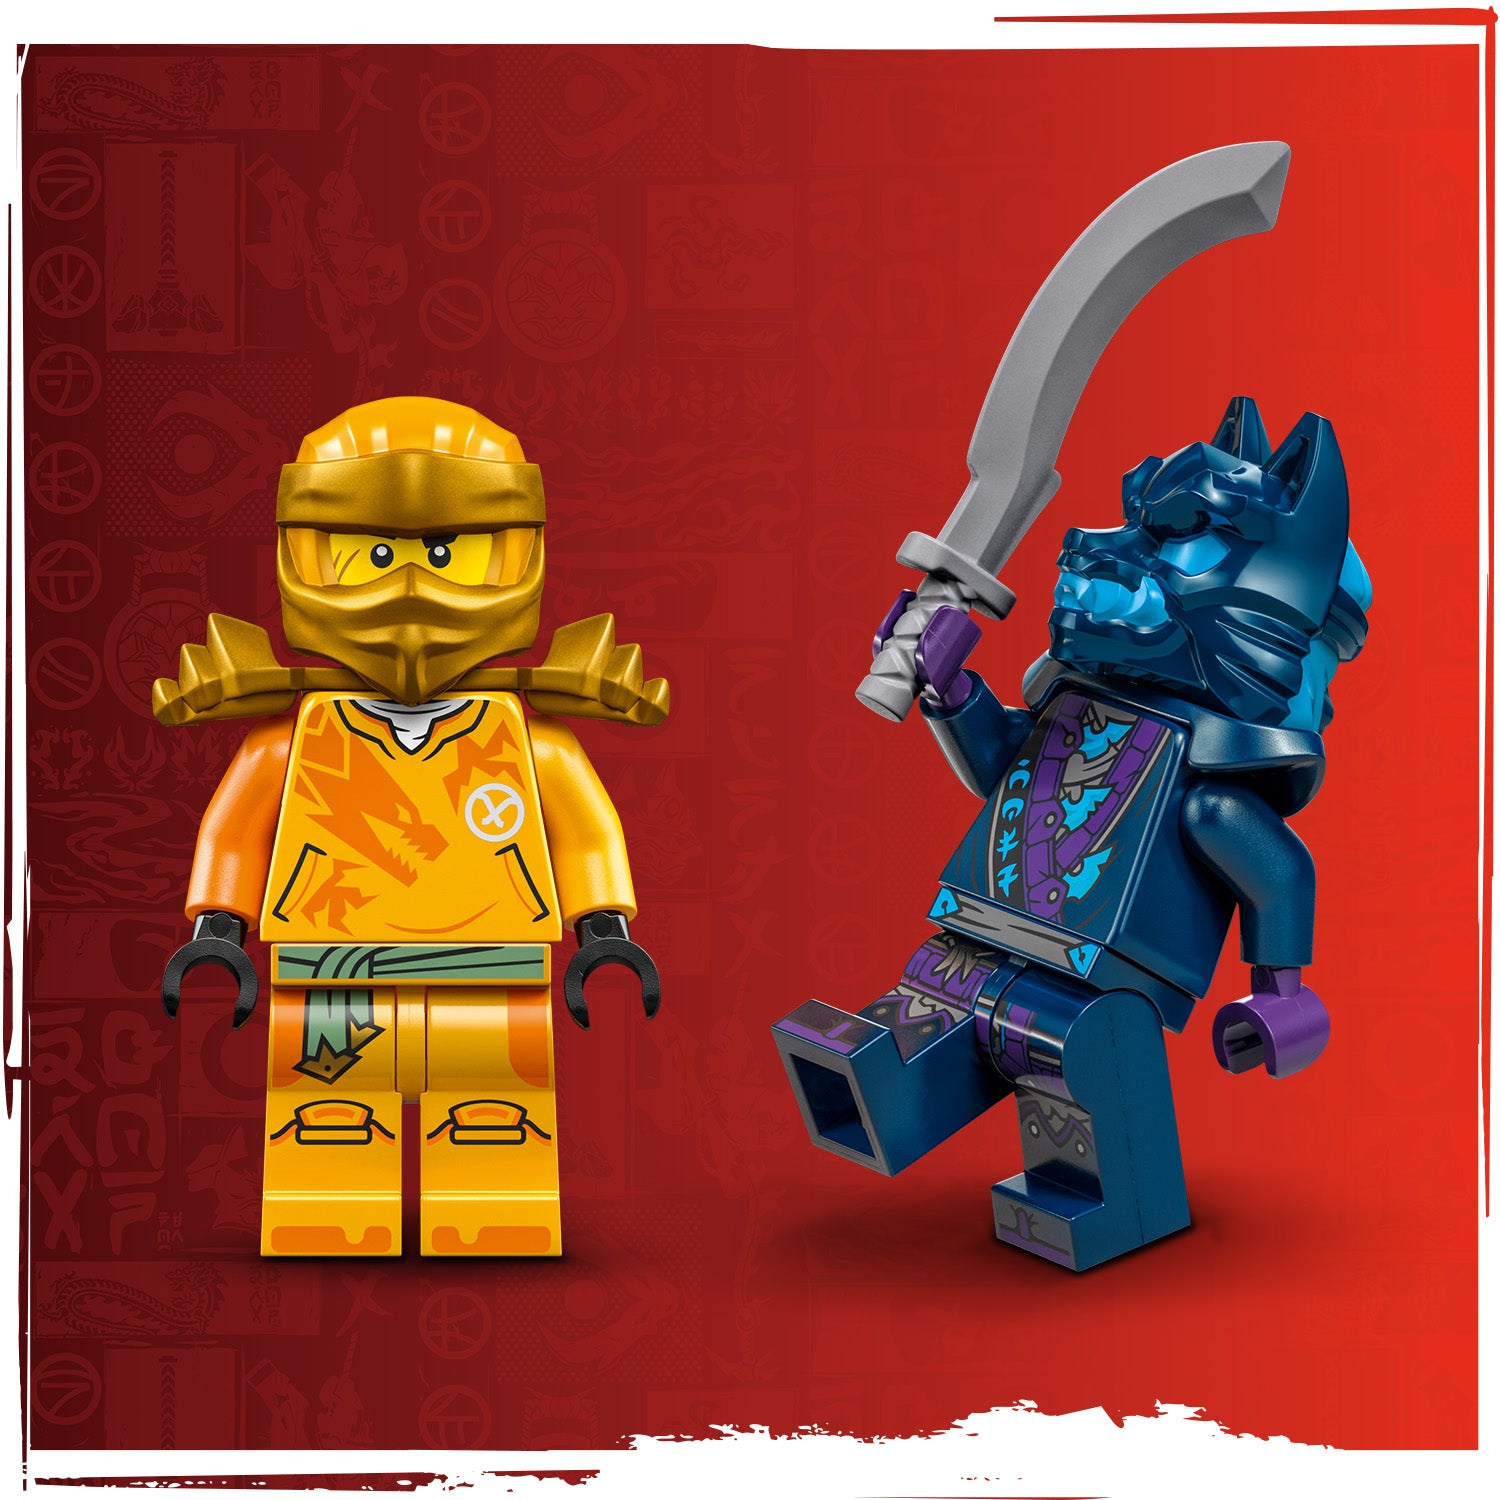 Lego 71803 Arins Rising Dragon Strike